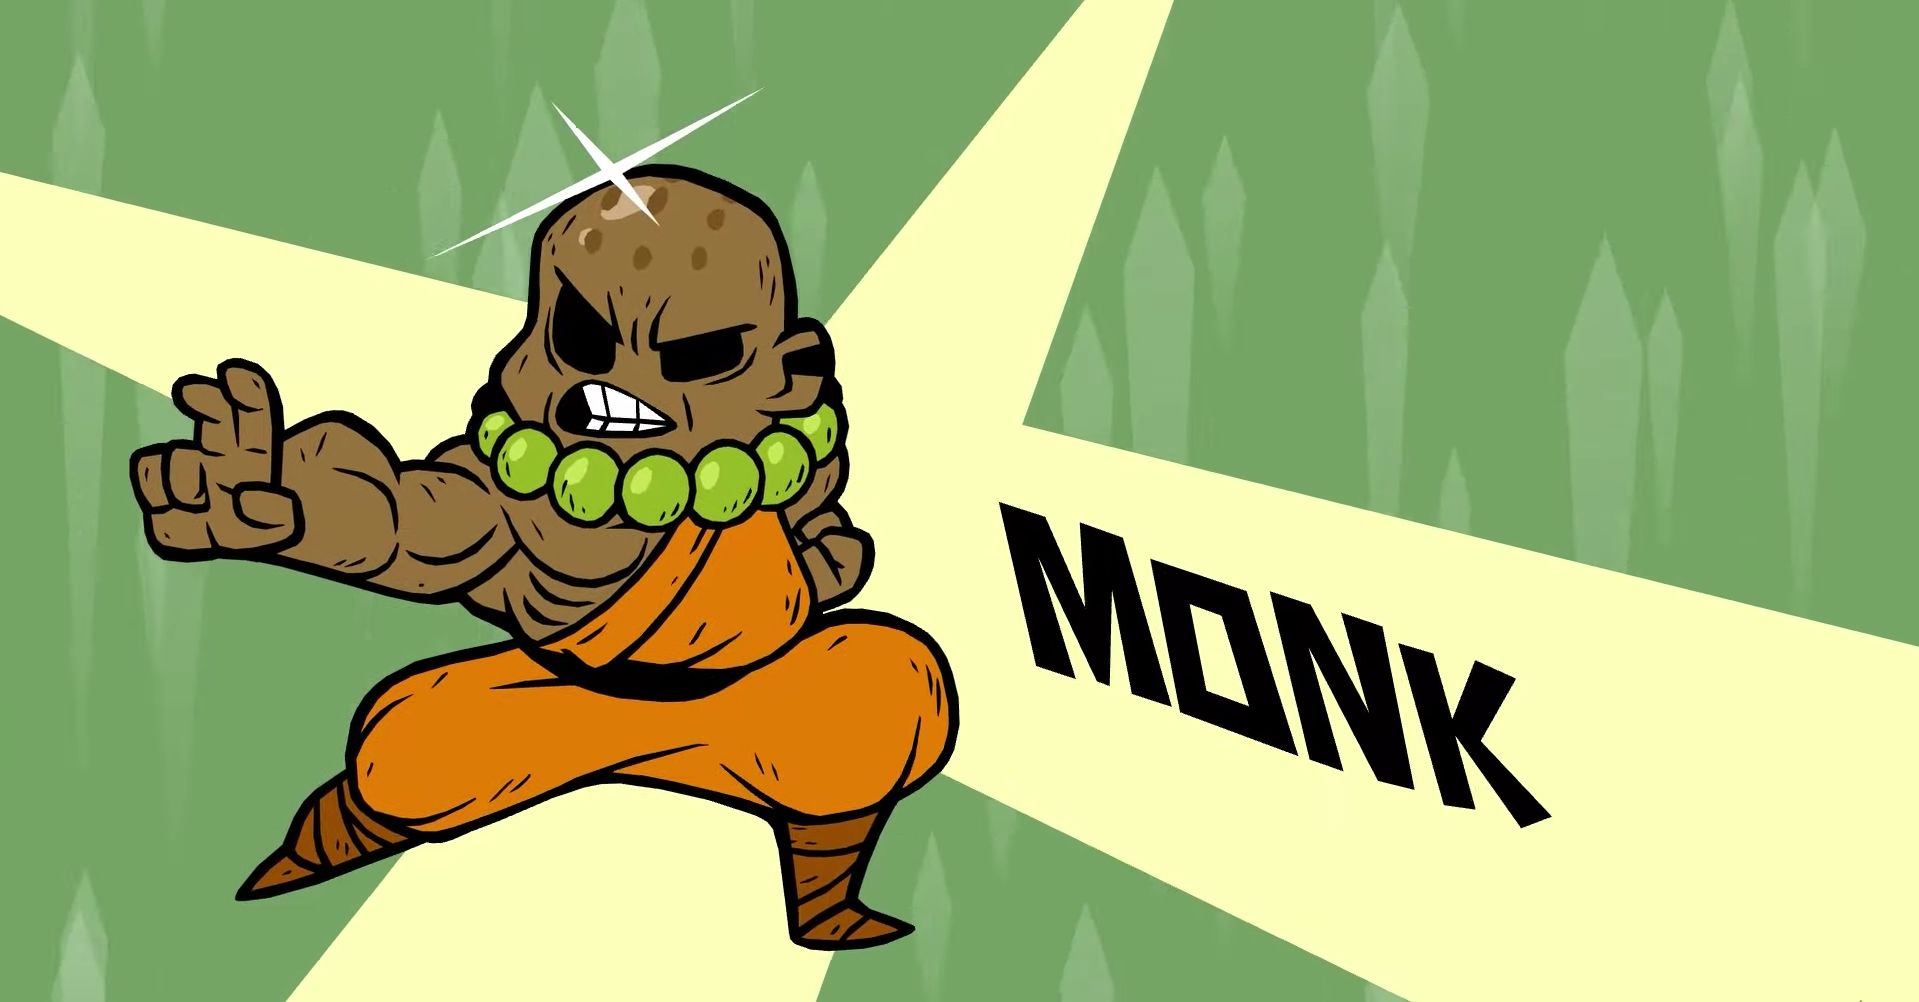 MonkNobody